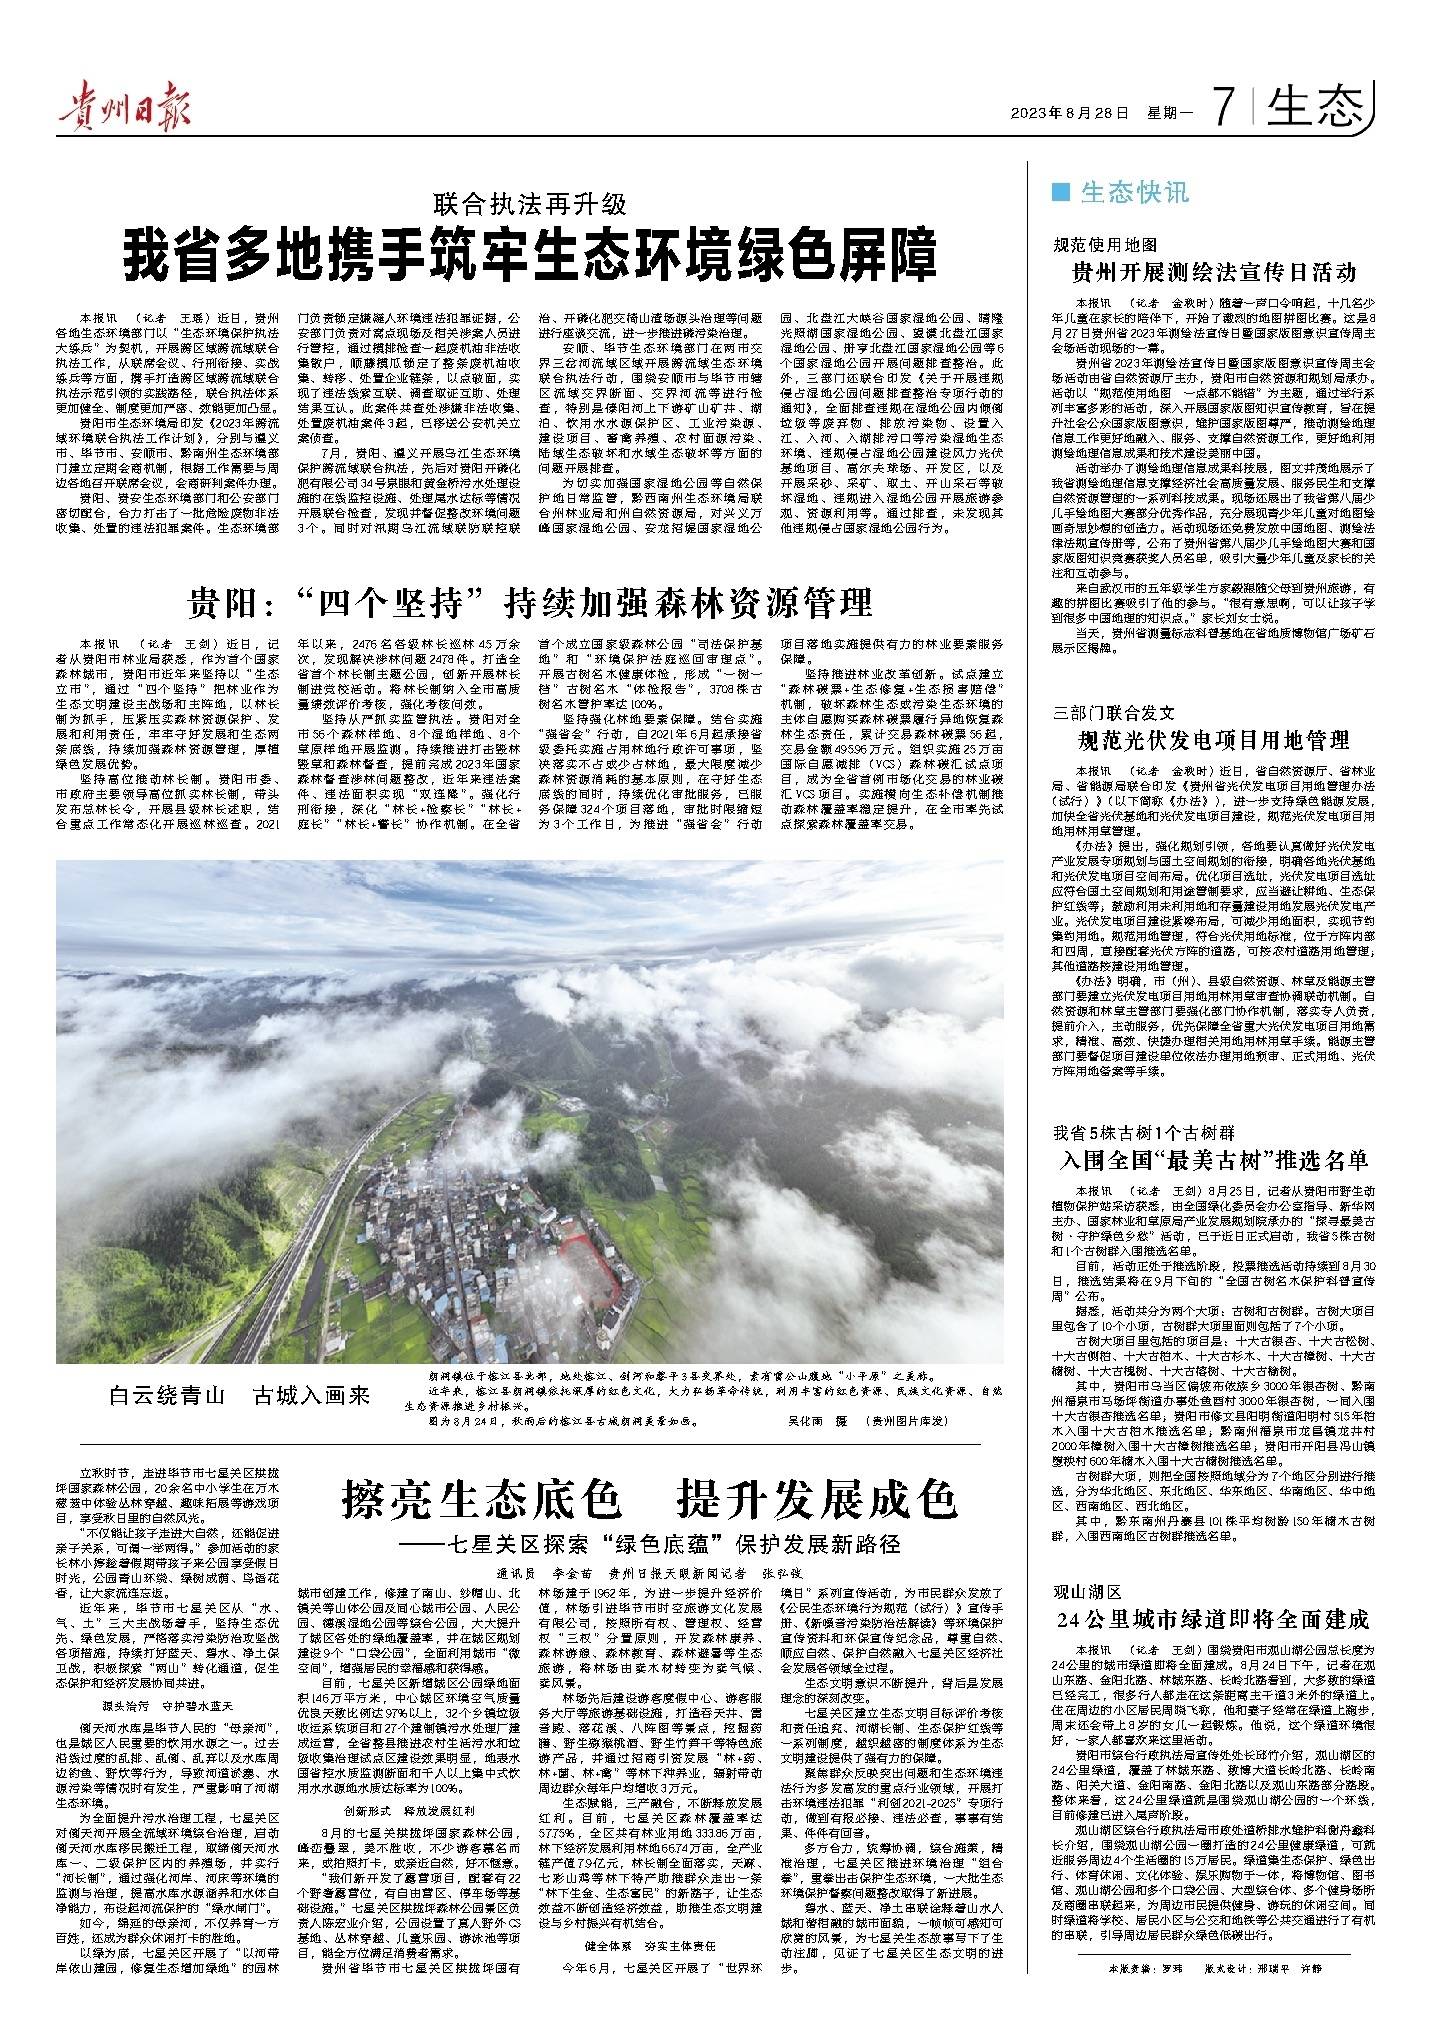 版面速览 | 8月28日贵州日报《生态》新闻版